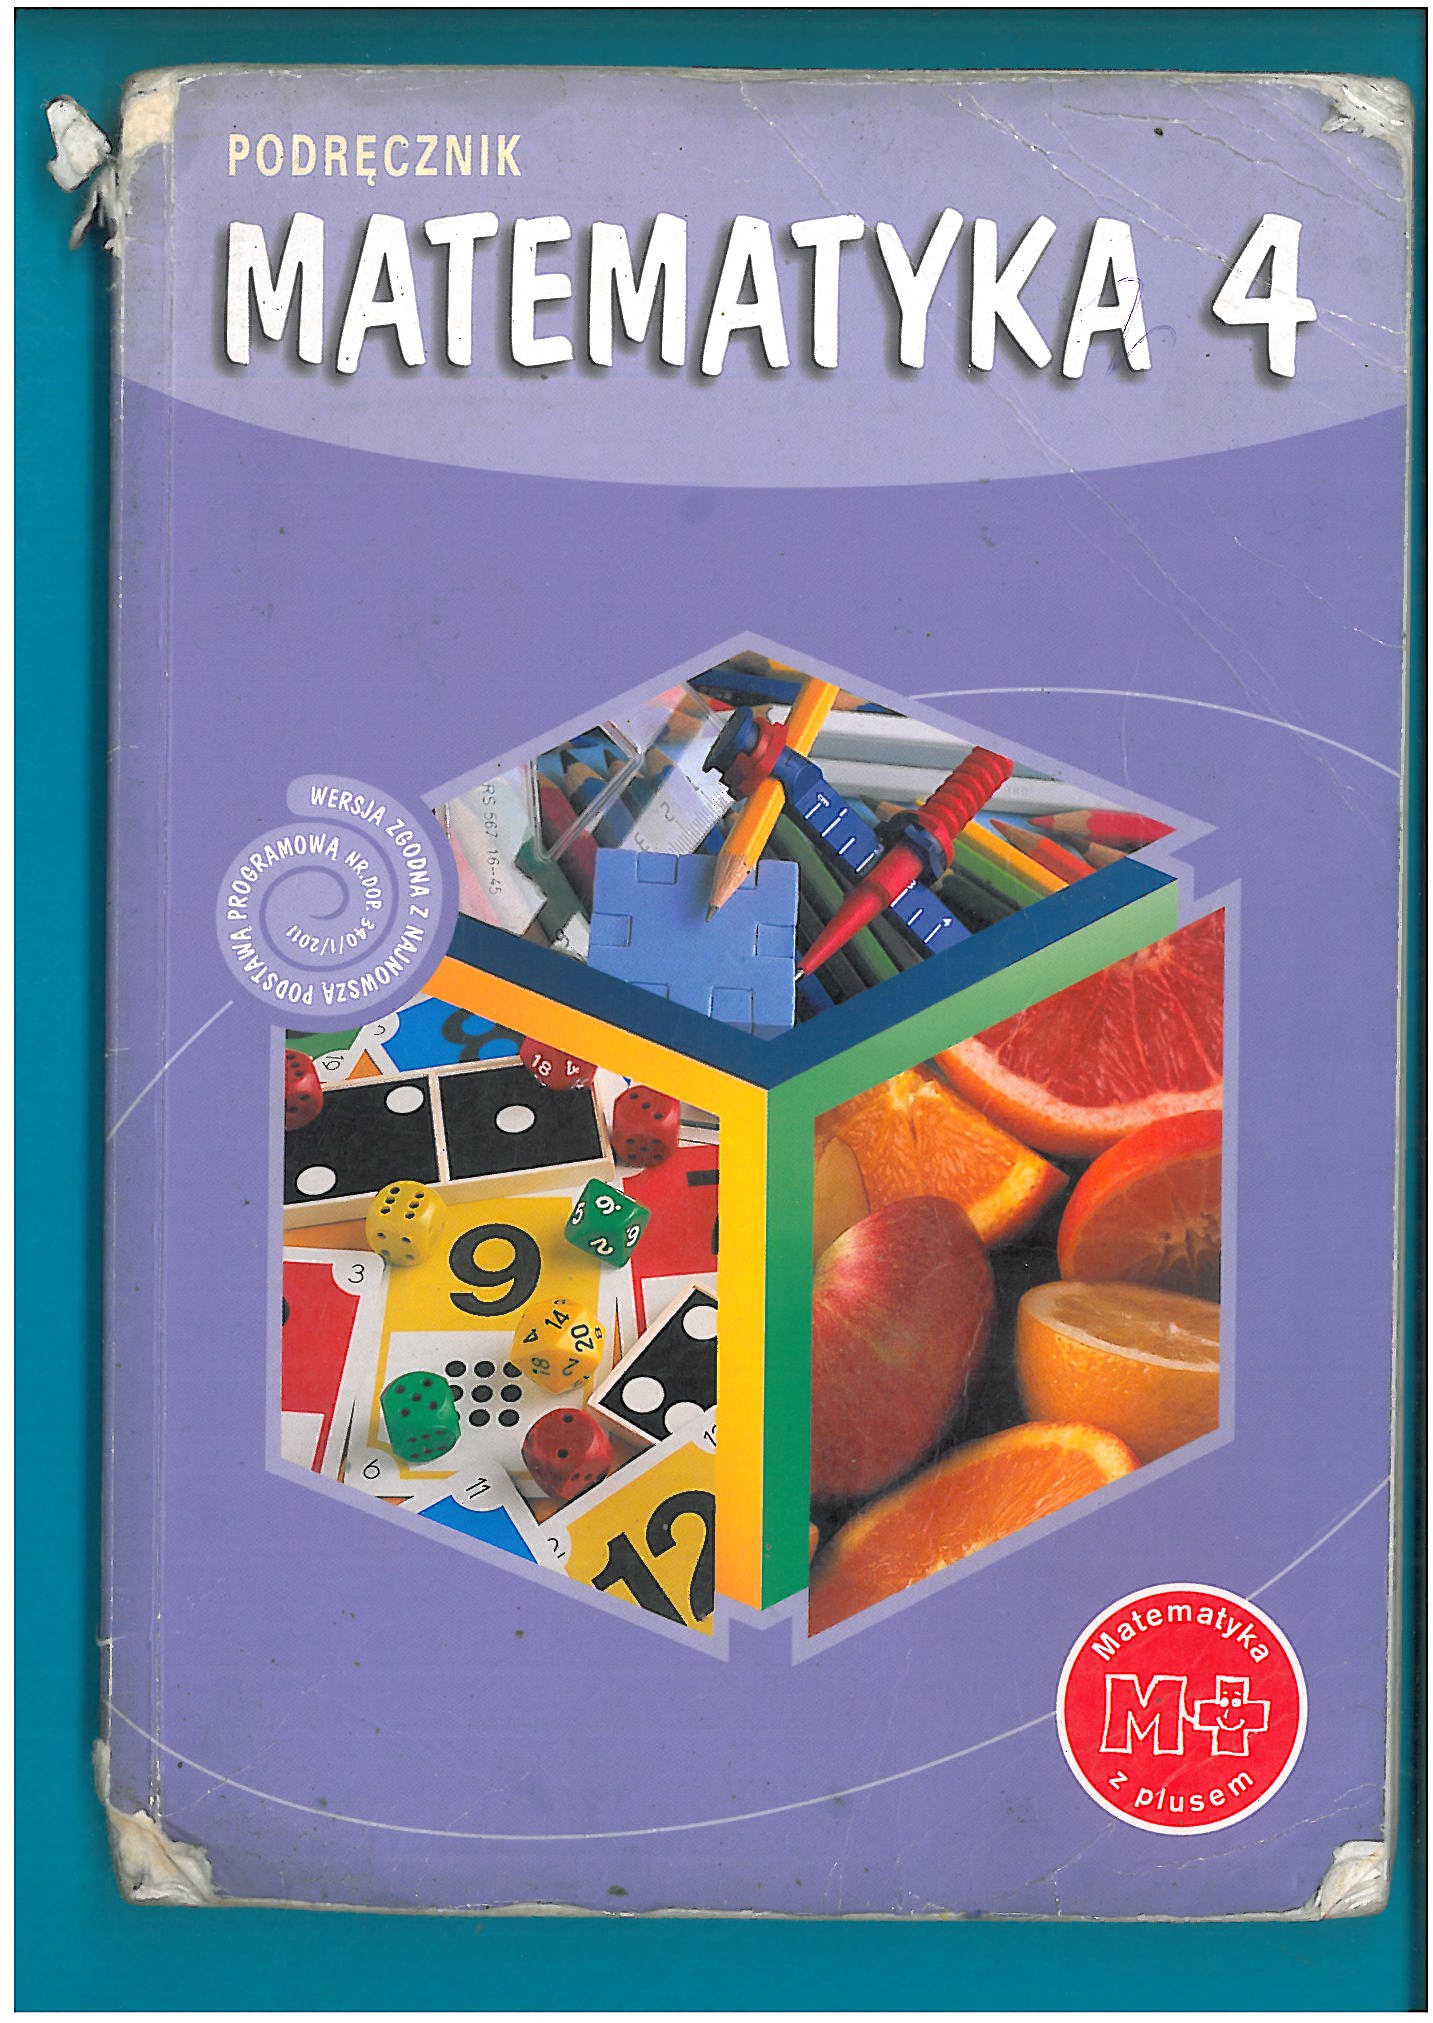 Książka Do Matematyki Klasa 5 MATEMATYKA PODRĘCZNIK DO KLASY 4 SP - 6943008600 - oficjalne archiwum